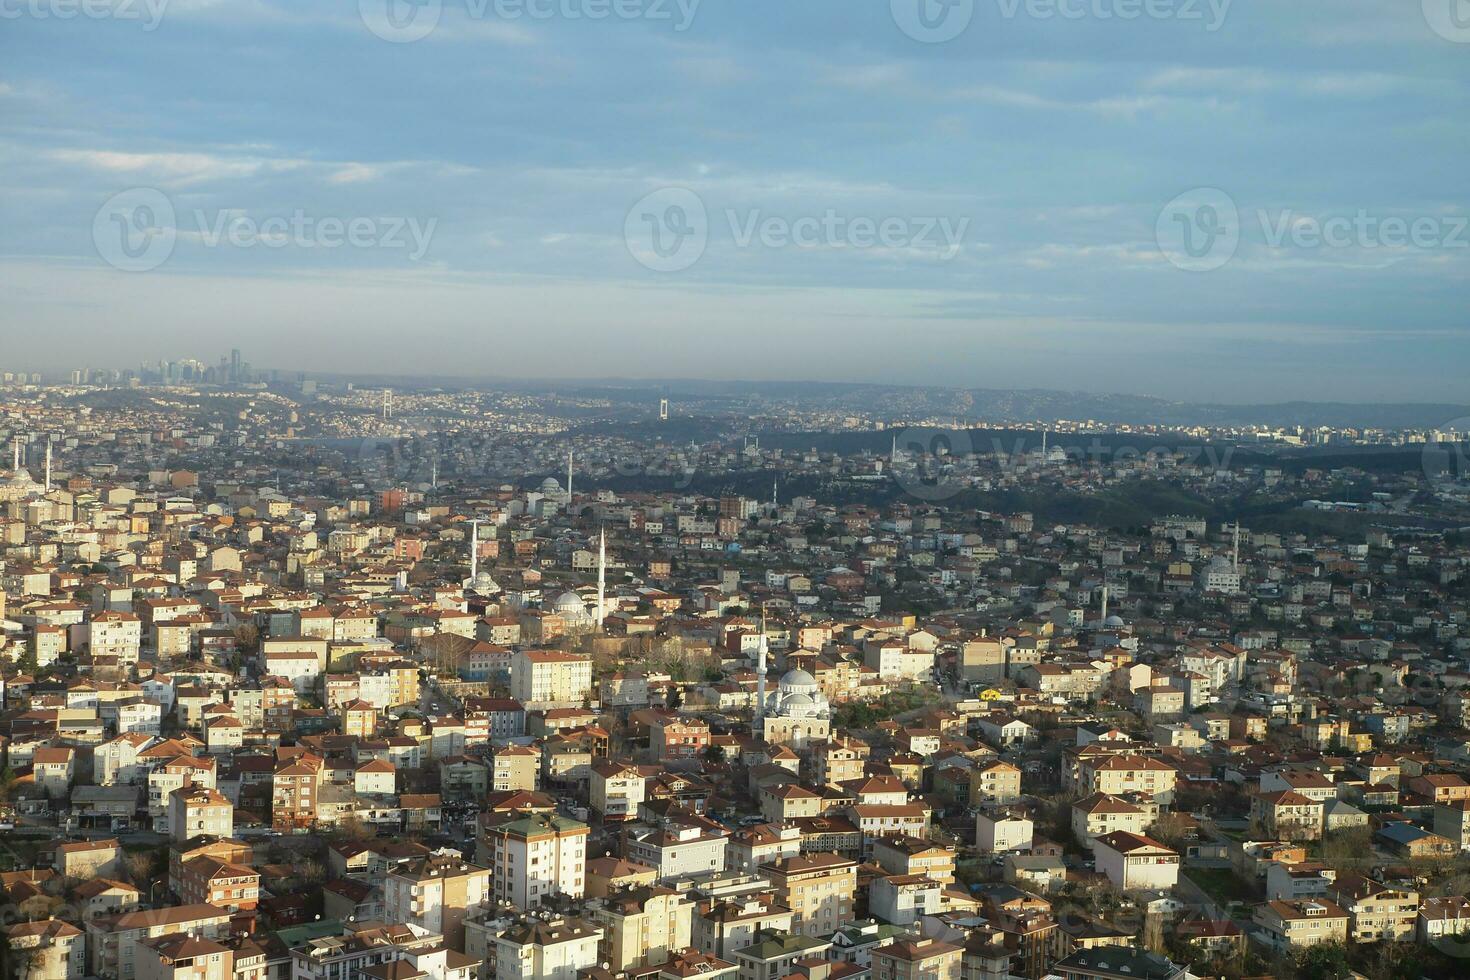 arial ver de Estanbul asiático lado urbano edificio bloques foto